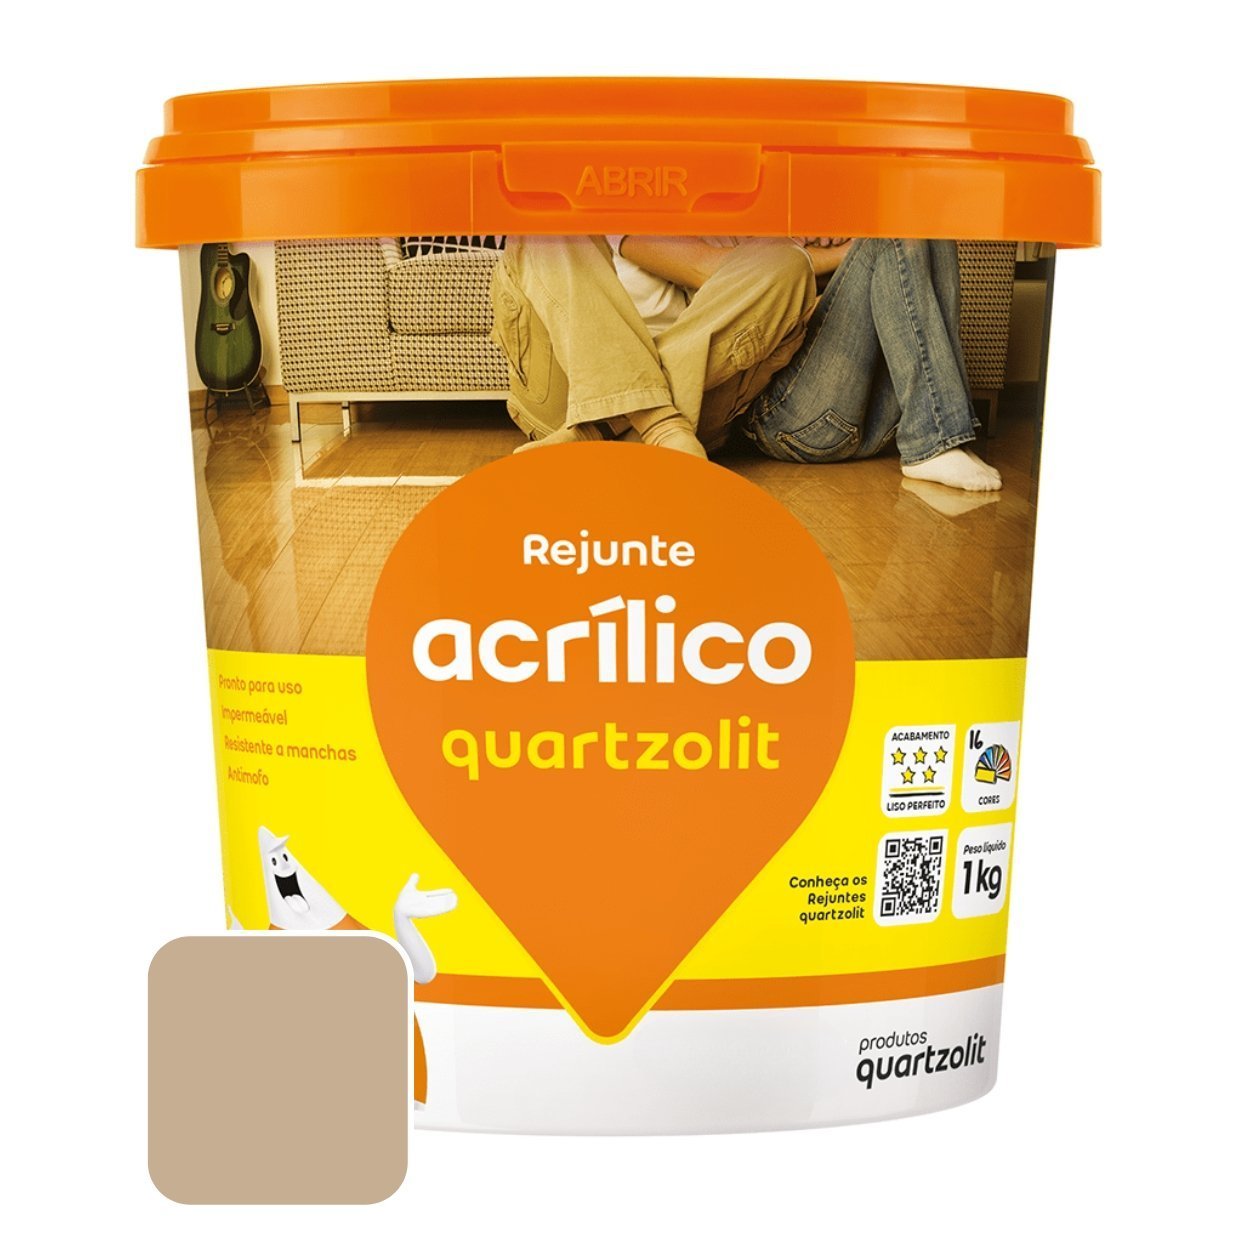 Rejunte Acrílico 1kg Pronto Quartzolit Anti Fungo Cortiça - 1